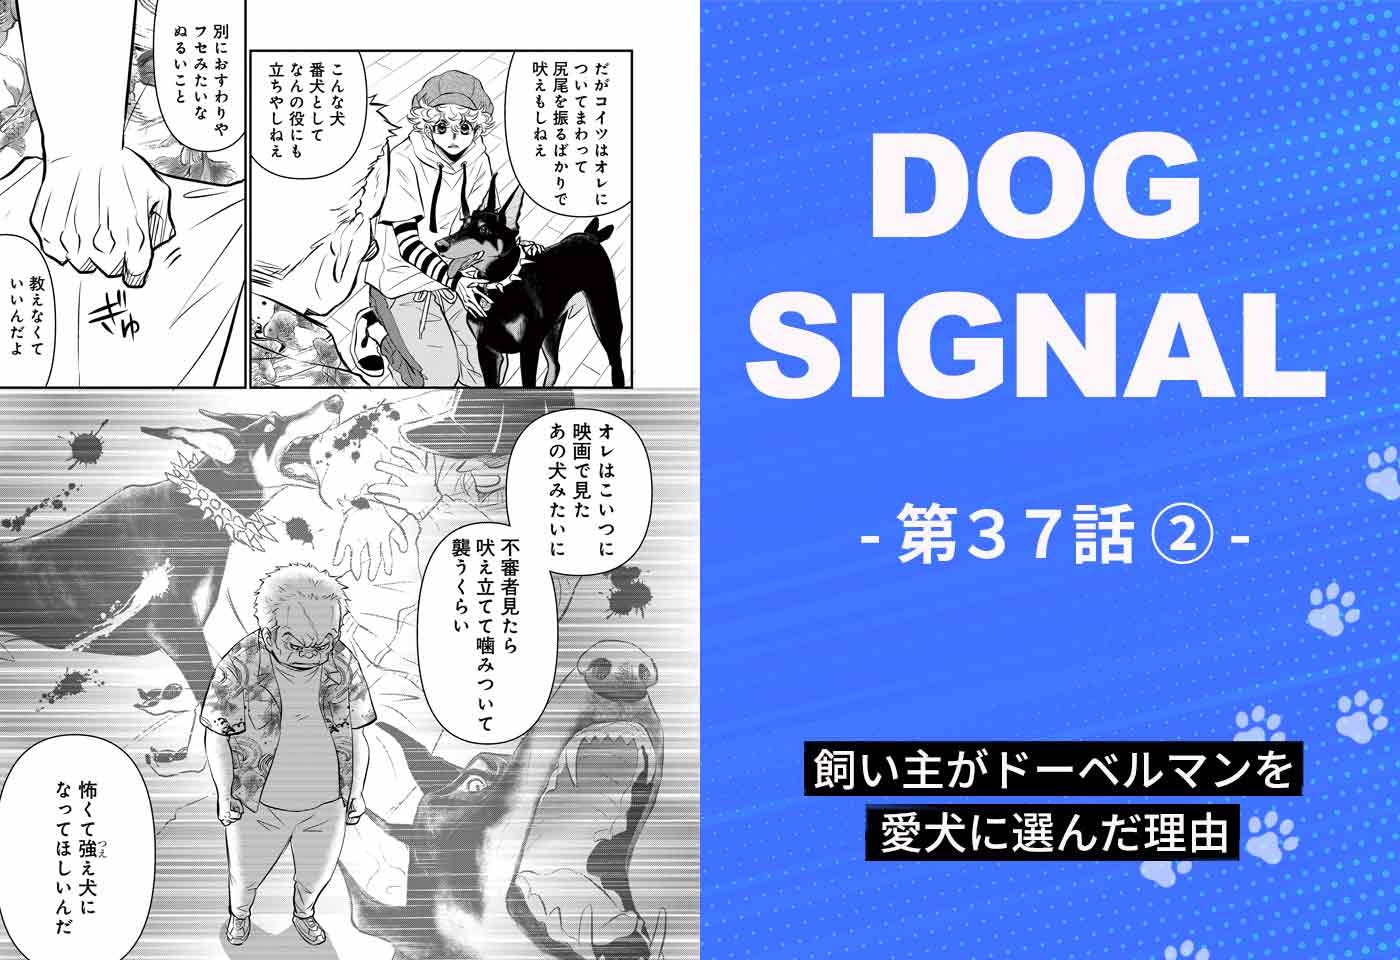 【最新話】『DOG SIGNAL』37話目2/4　番犬にならない犬は要らない？